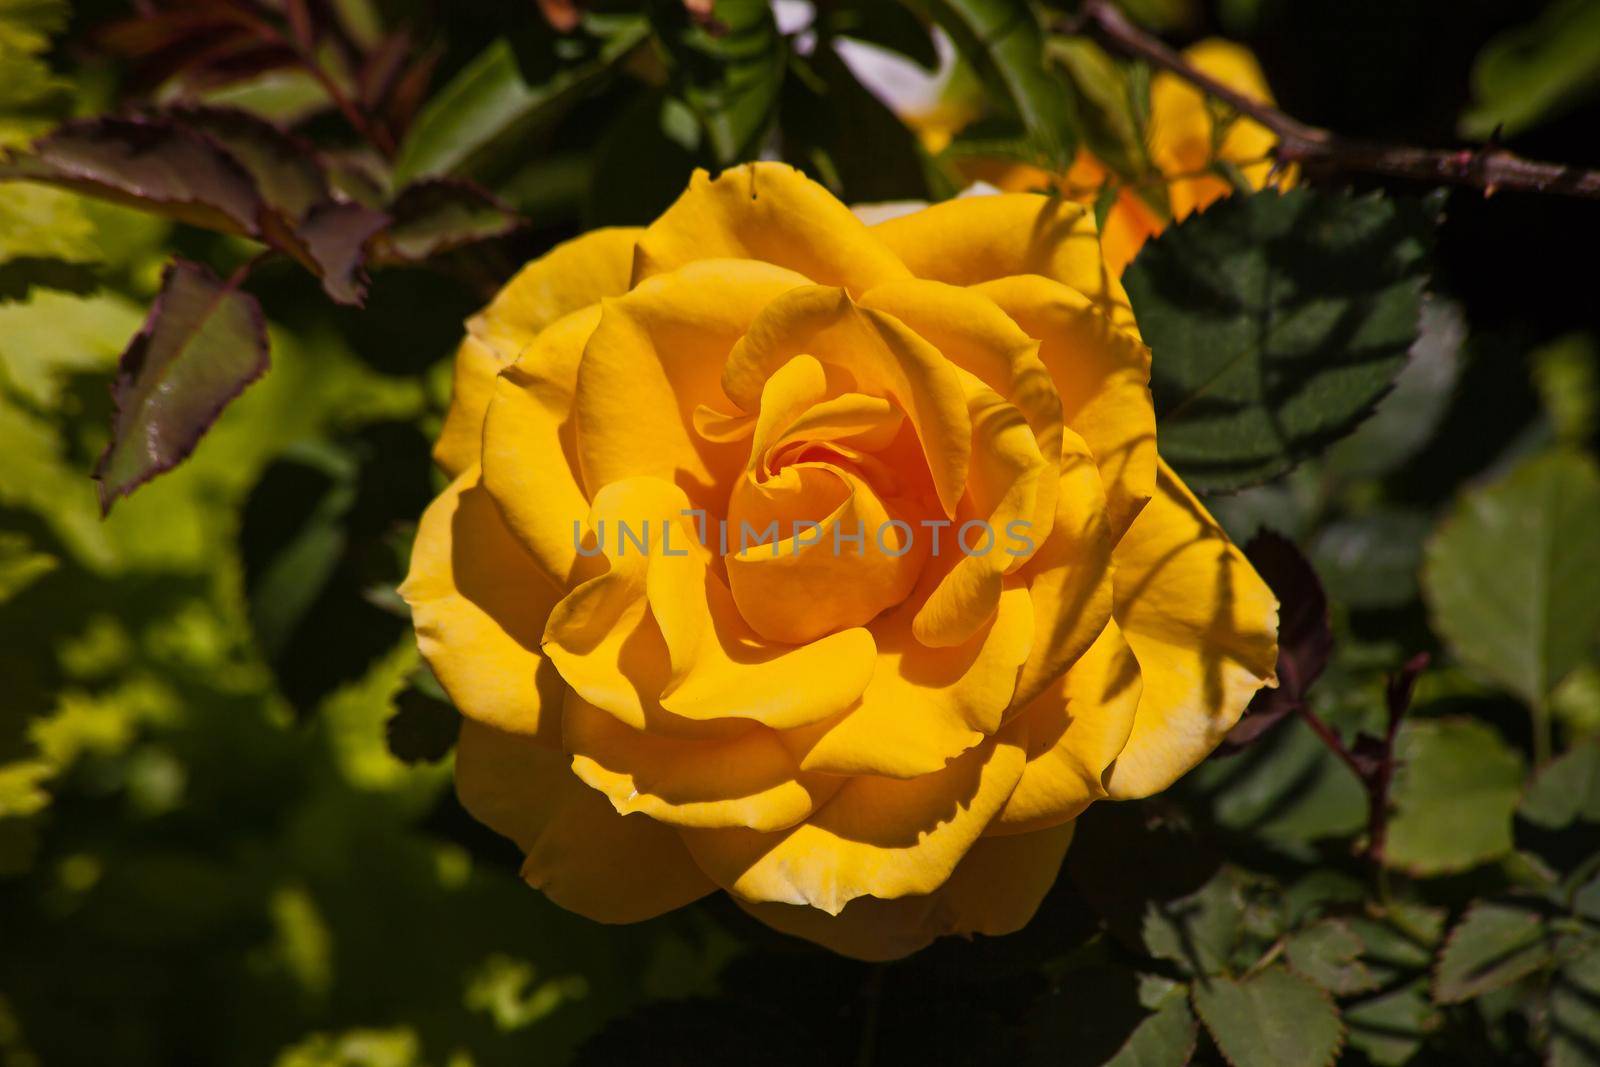 Yellow Rose 14694 by kobus_peche